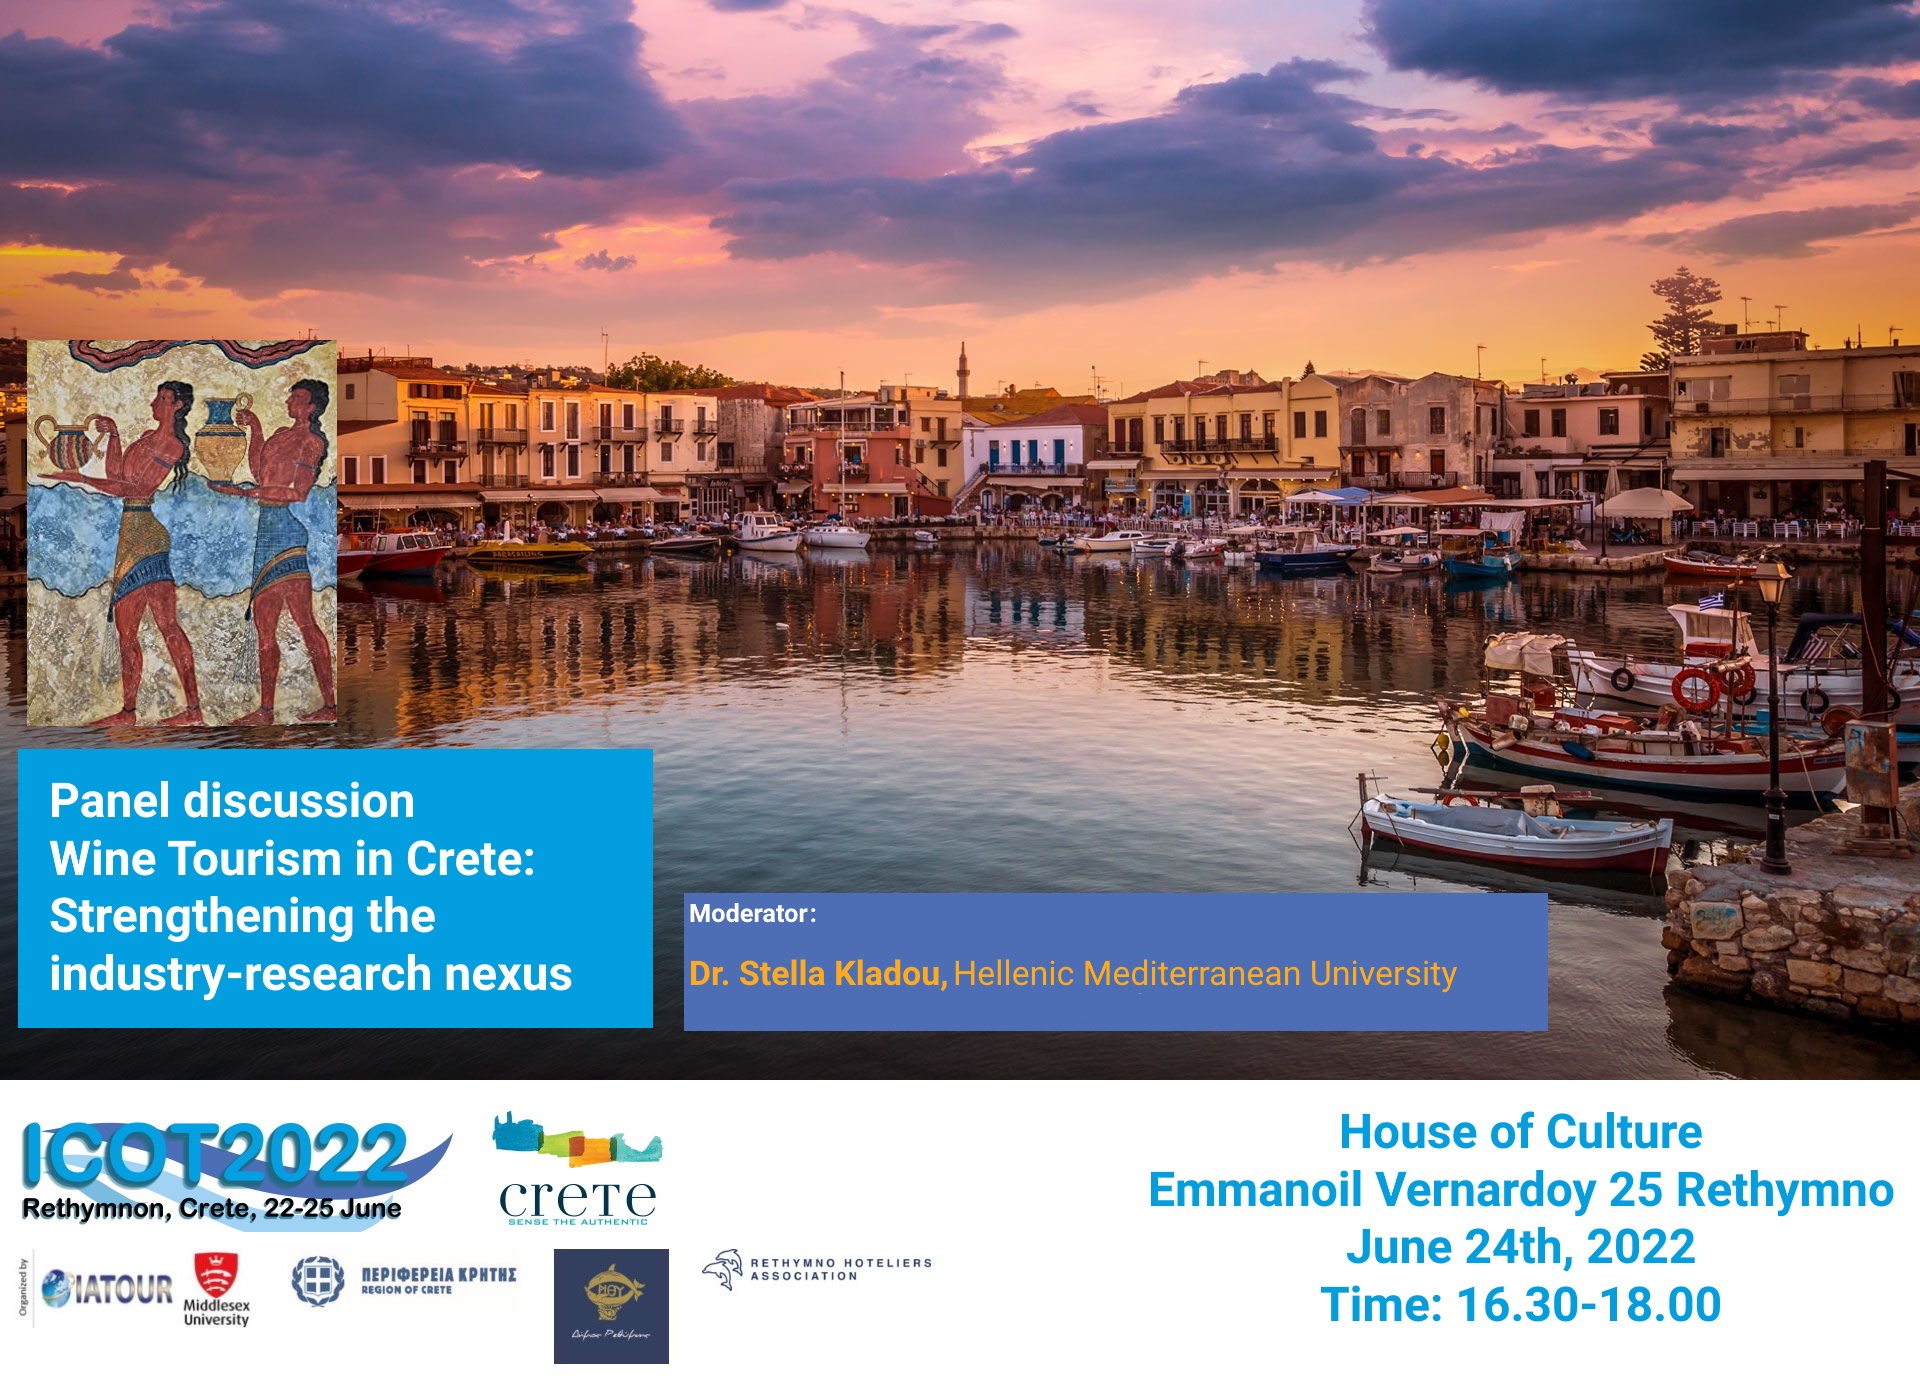 Το Wines of Crete στο πάνελ συζήτησης με θέμα “Wine Tourism in Crete: Strengthening the industry-research nexus”